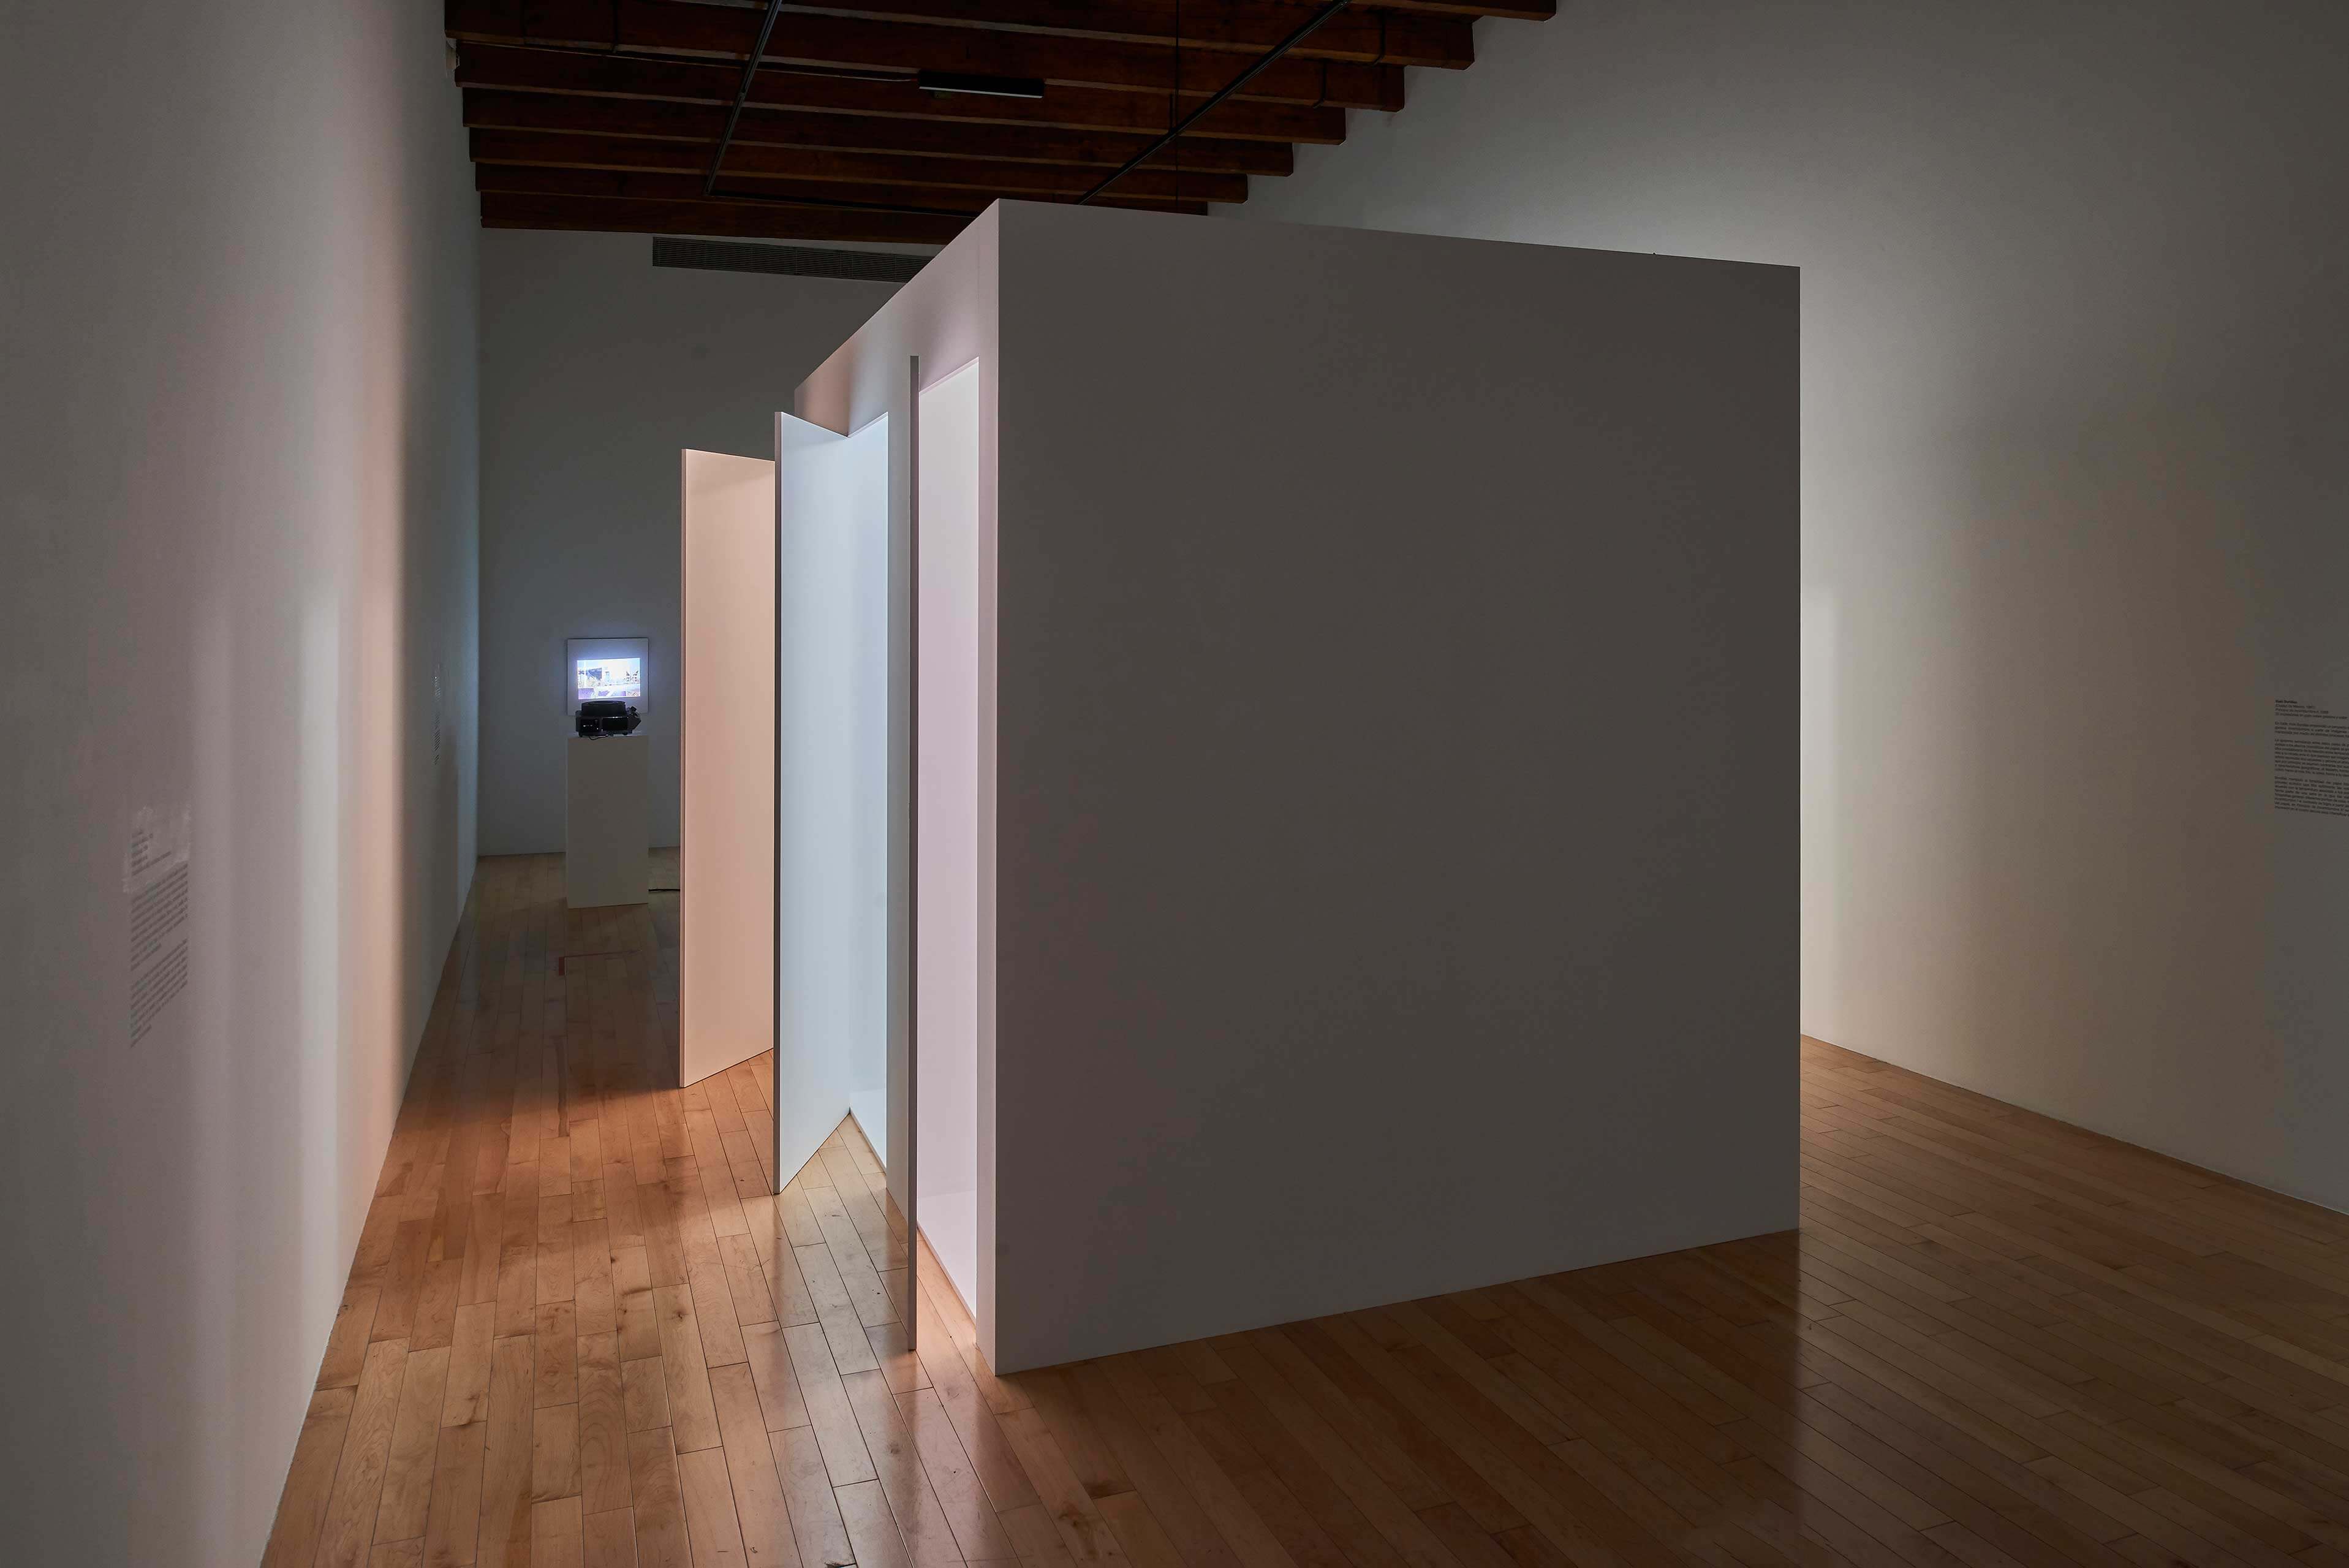 Light Rooms | El tiempo en las cosas. Salas de Arte Contemporáneo | Museo Amparo, Puebla